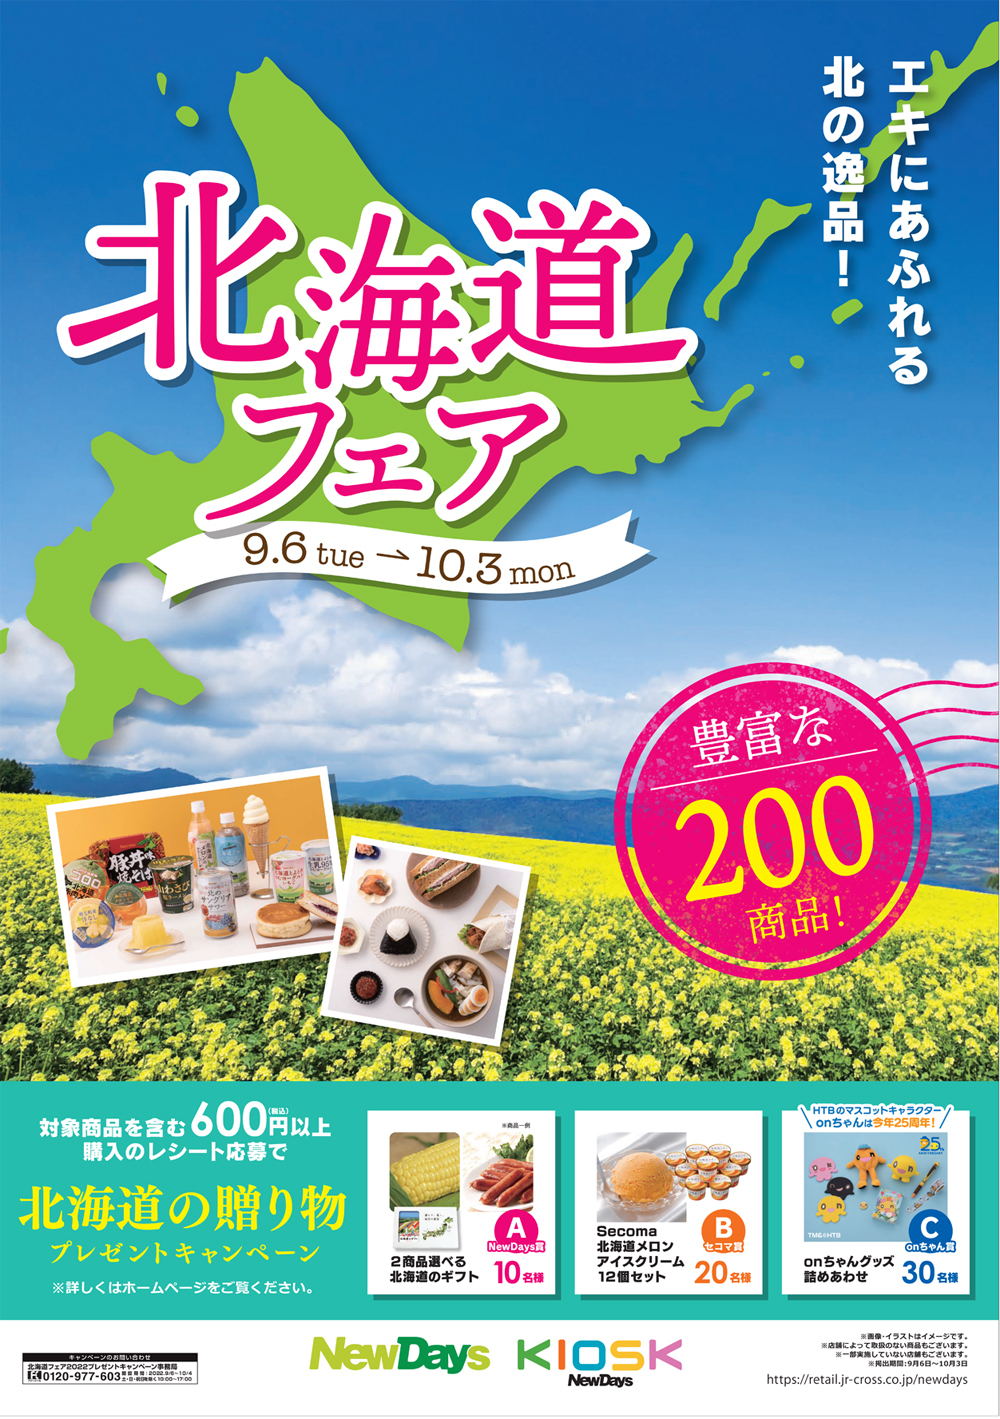 北海道の名店とのコラボフードや銘菓など合計200商品が大集合！
NewDays「北海道フェア」9月6日(火)から開催！